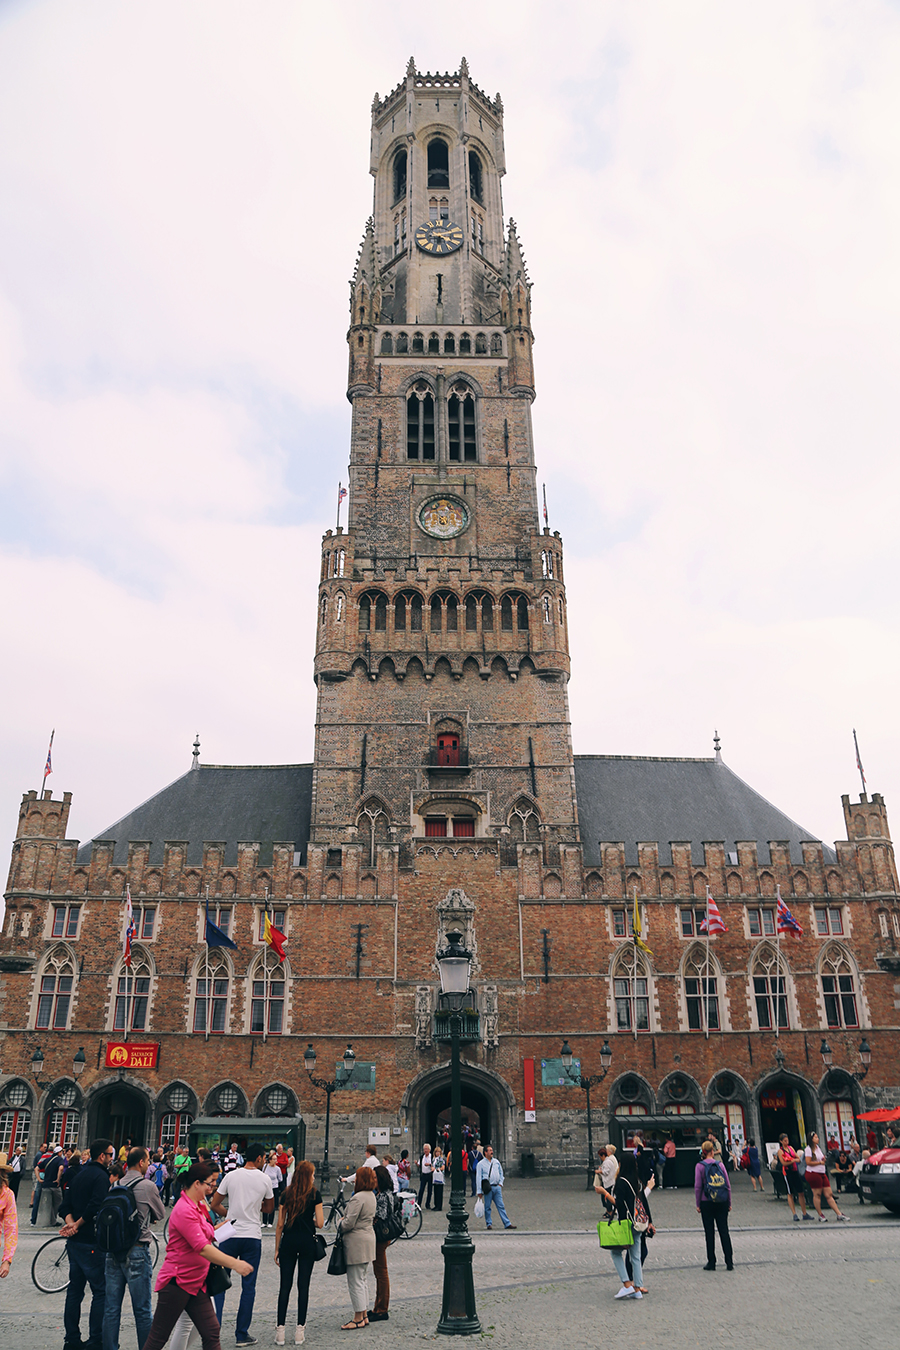 Bruges, Belgium Travel Guide